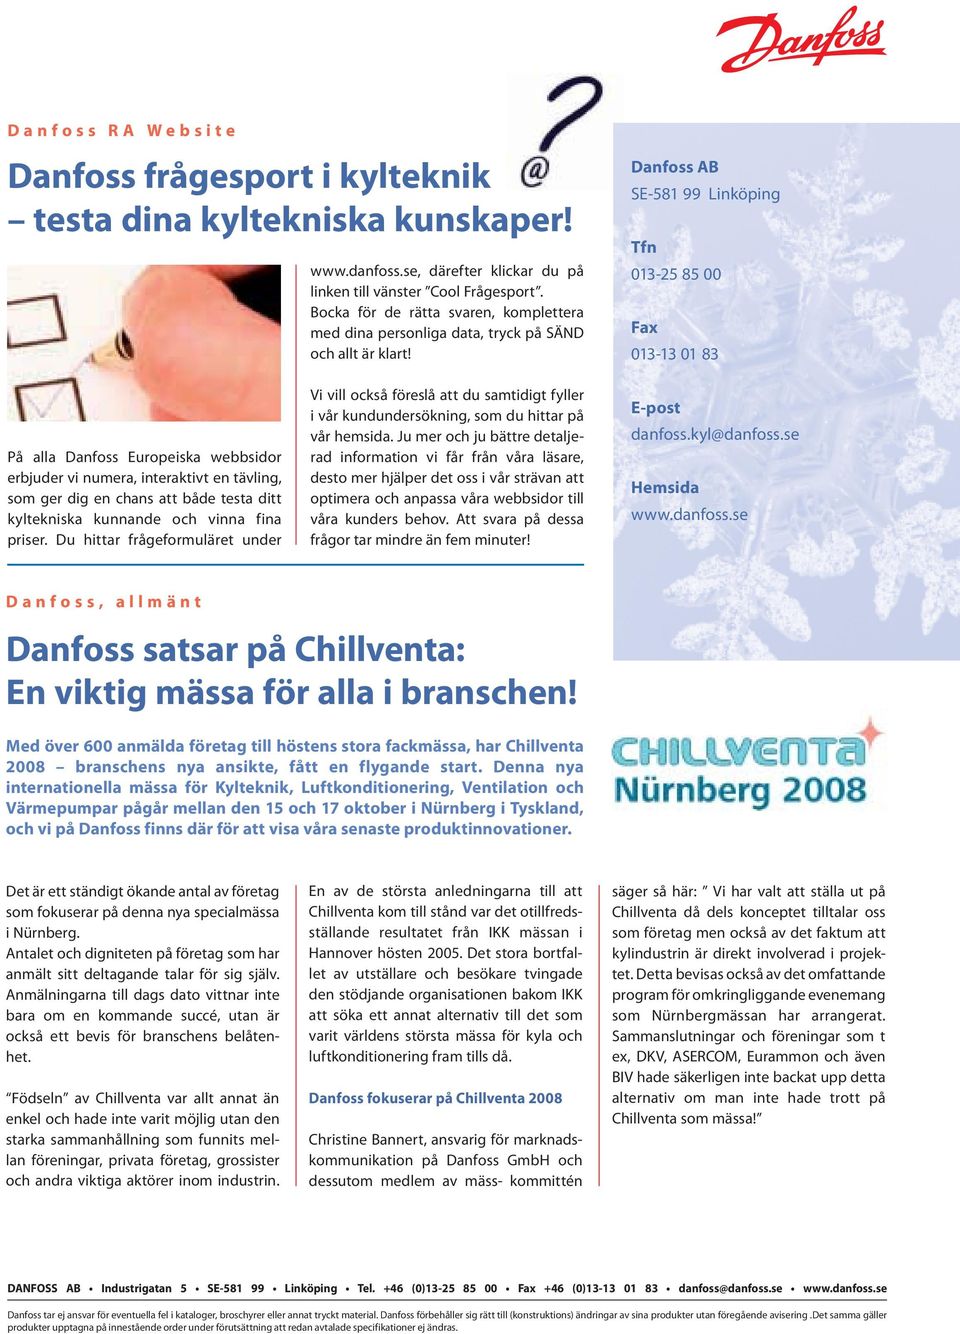 Danfoss AB SE-581 99 Linköping Tfn 013-25 85 00 Fax 013-13 01 83 På alla Danfoss Europeiska webbsidor erbjuder vi numera, interaktivt en tävling, som ger dig en chans att både testa ditt kyltekniska